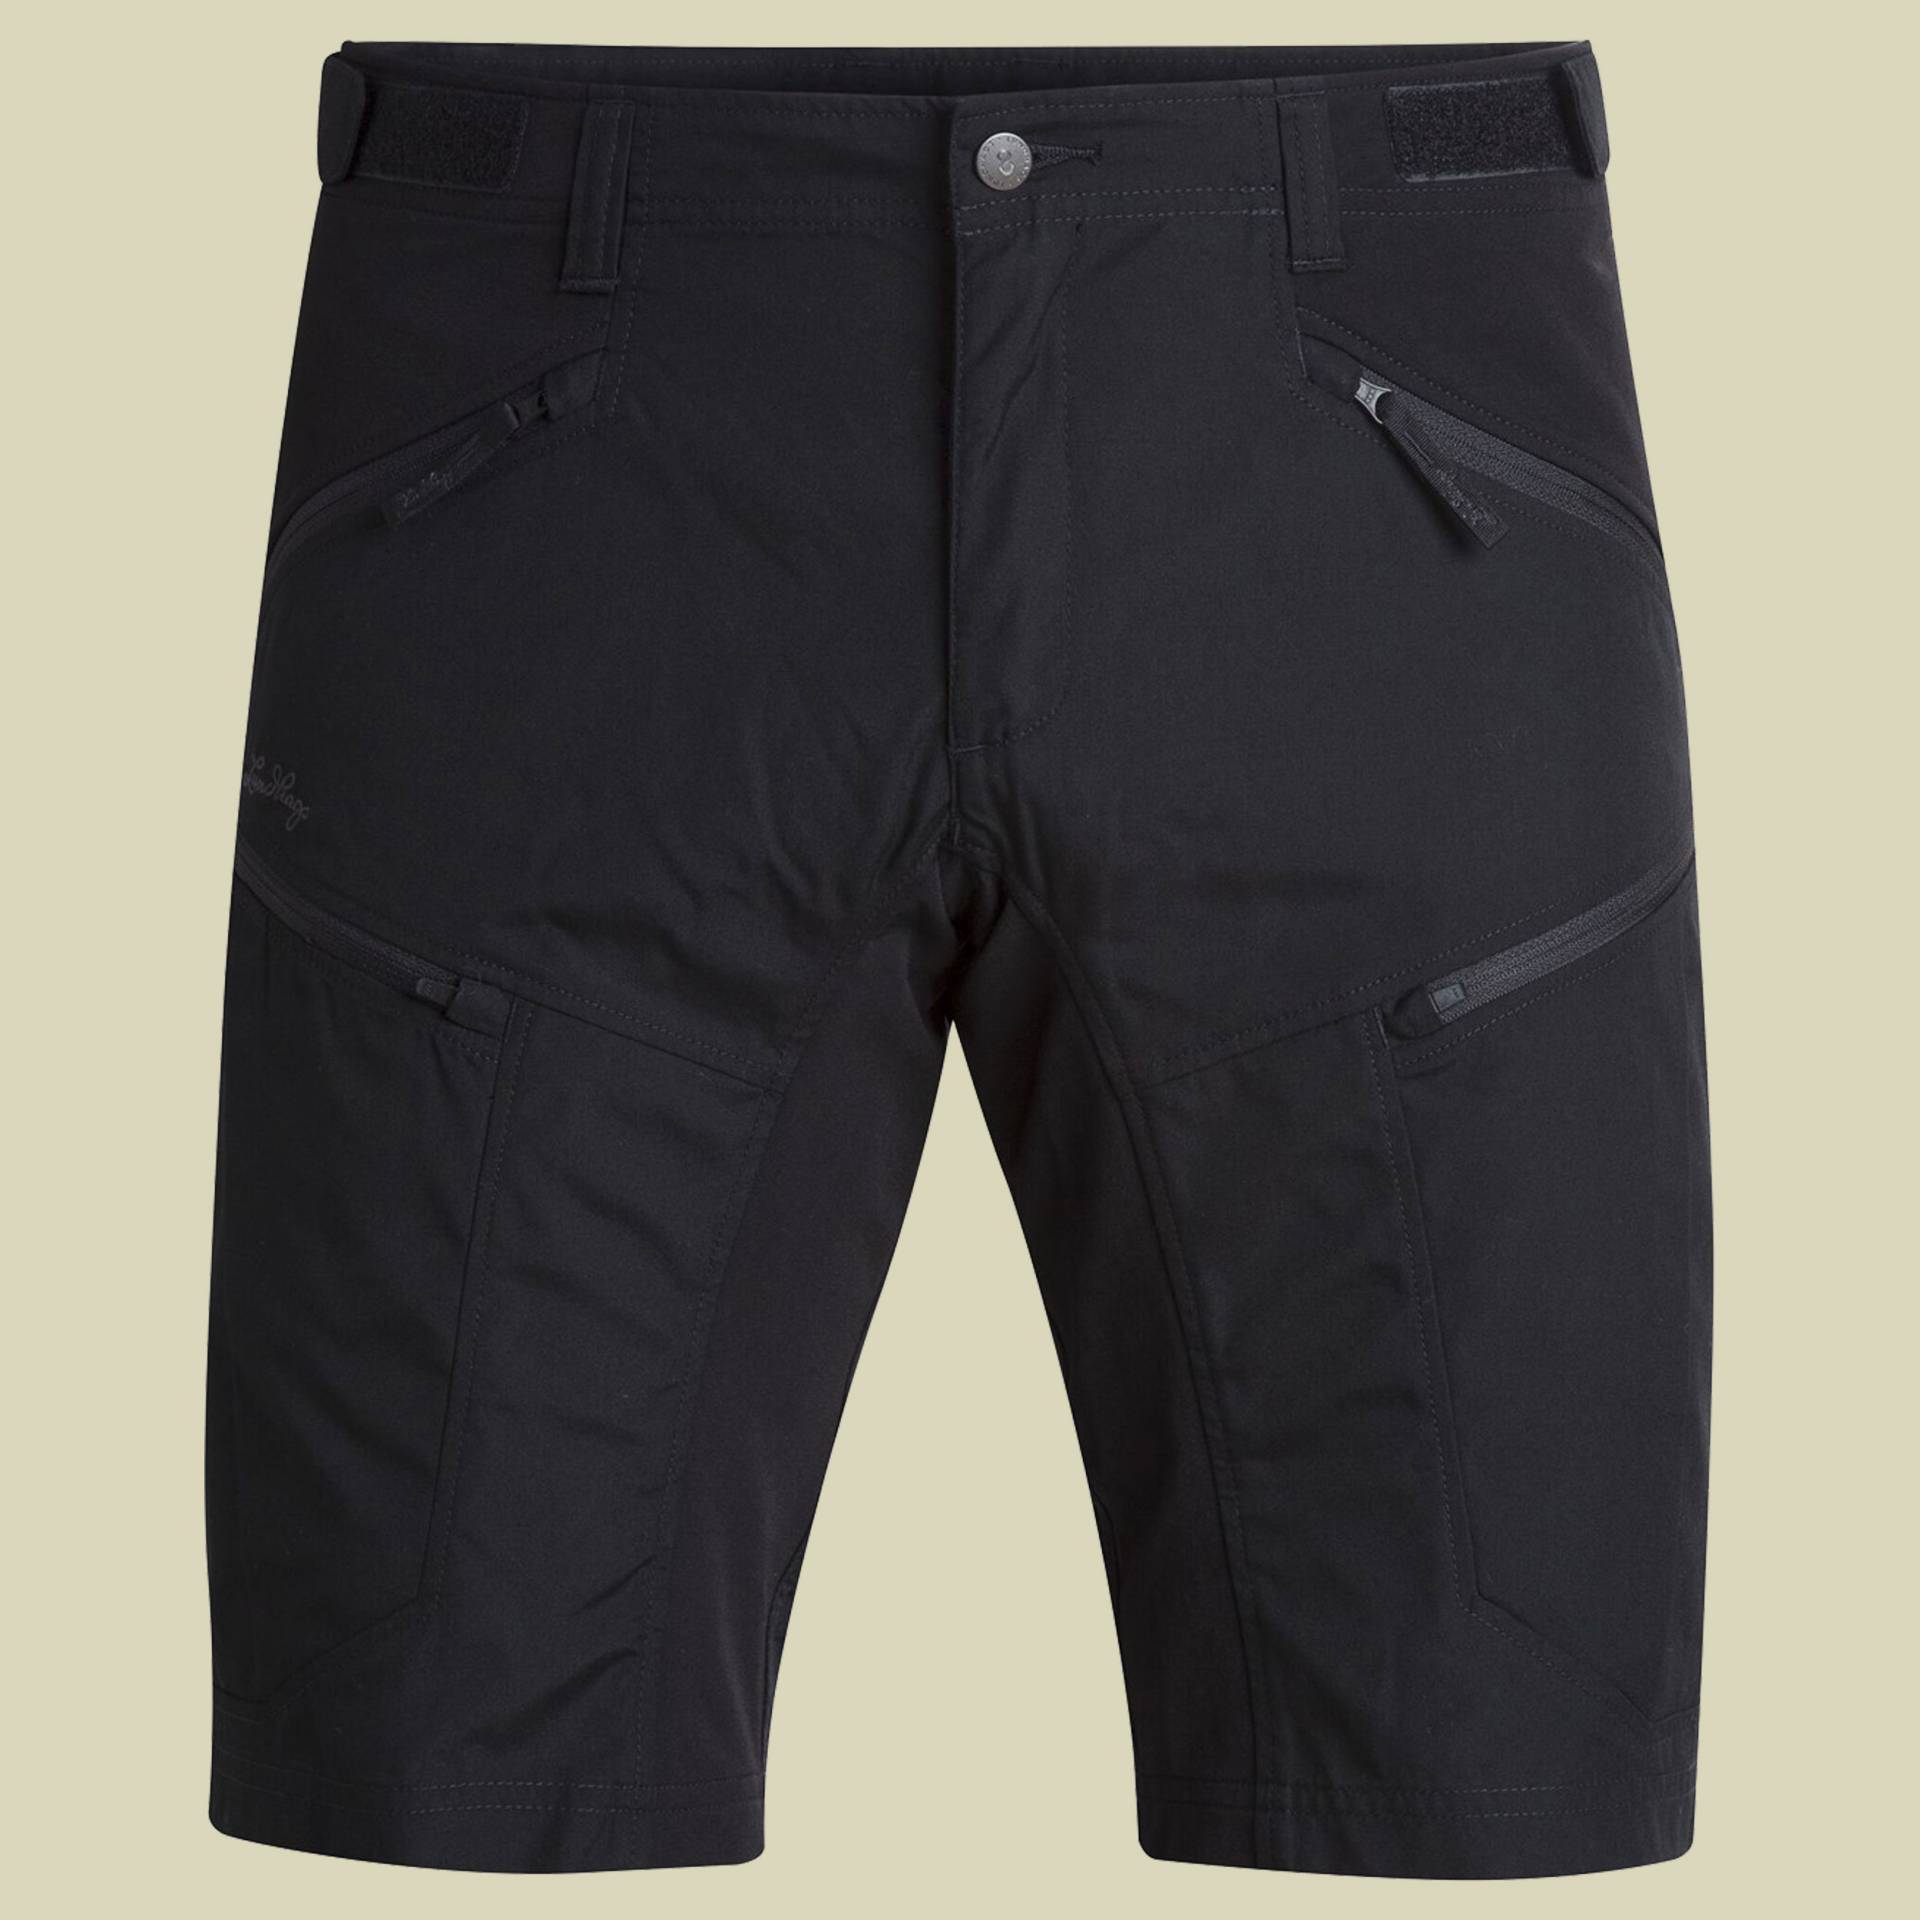 Makke II Shorts Men Größe 52 Farbe black von Lundhags